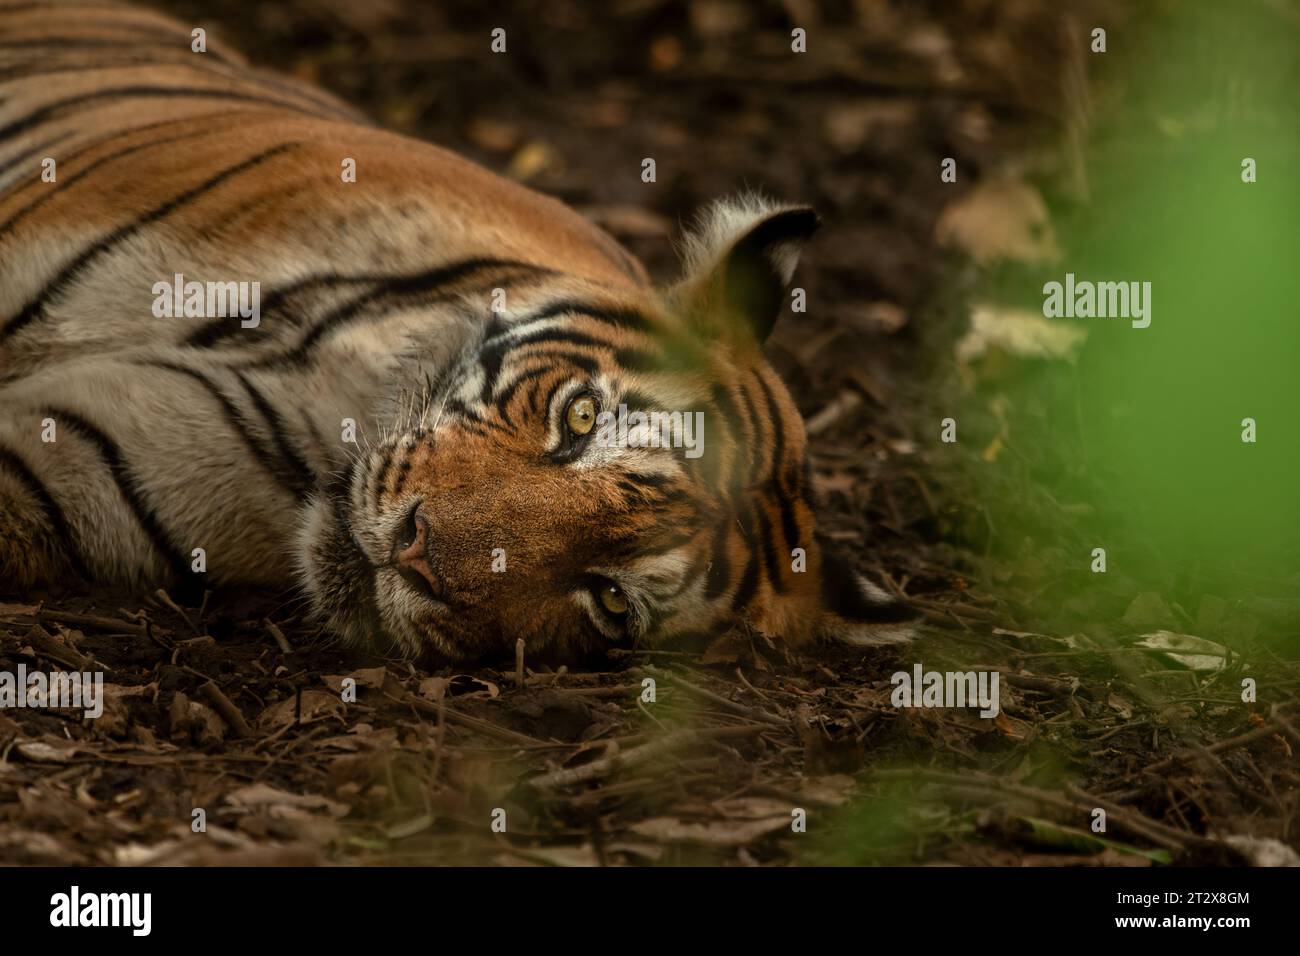 Une tigresse couchée sur le sol forestier de la zone no. 2 au parc national de Ranthambore, Rajasthan, Inde Banque D'Images